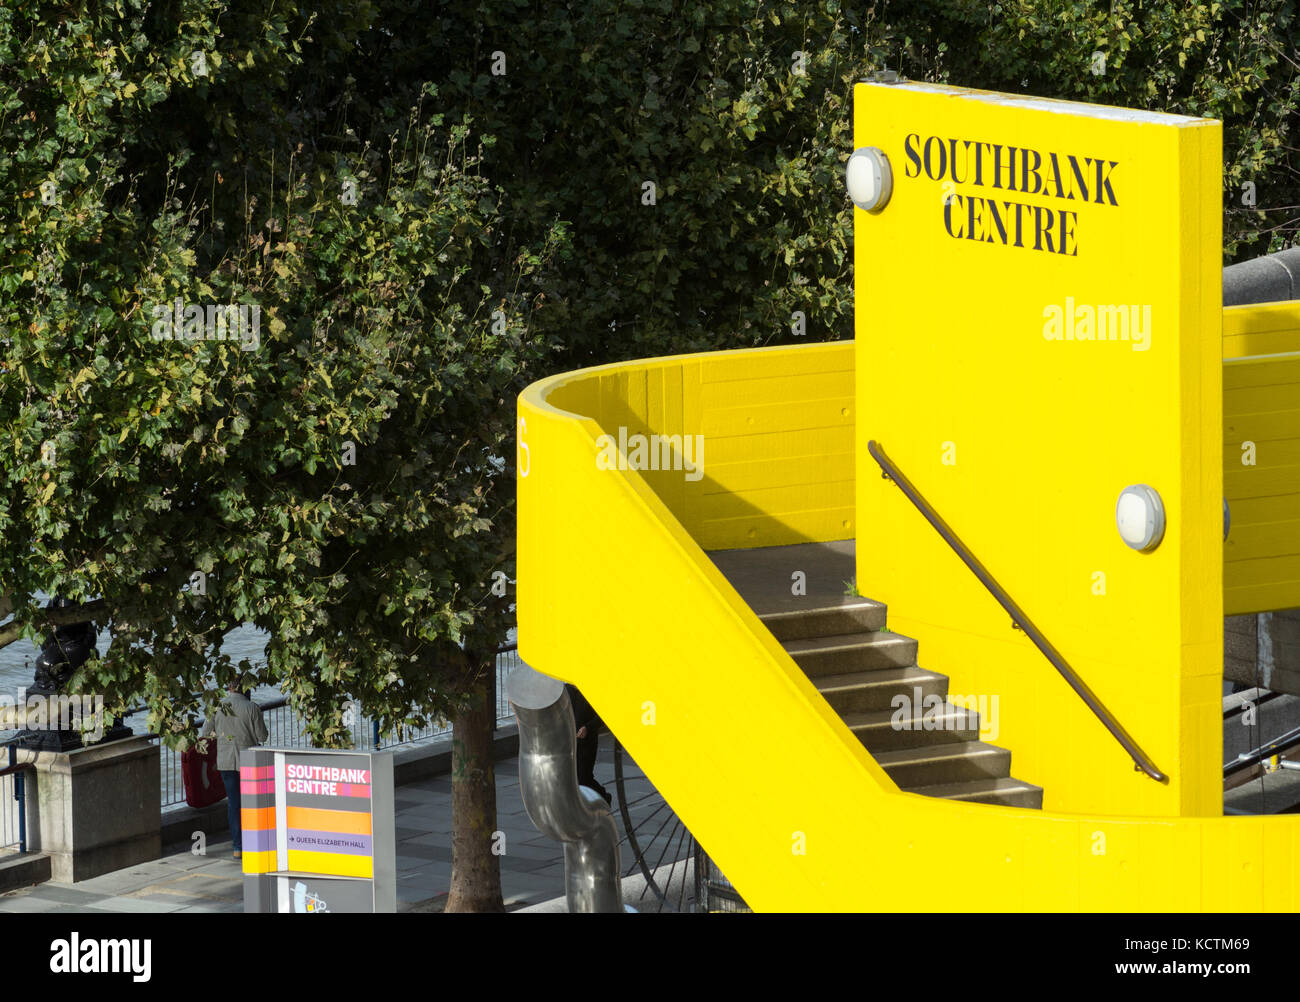 L'emblématique Southbank Centre escalier en béton jaune vif, Lambeth, London, SE1, UK Banque D'Images